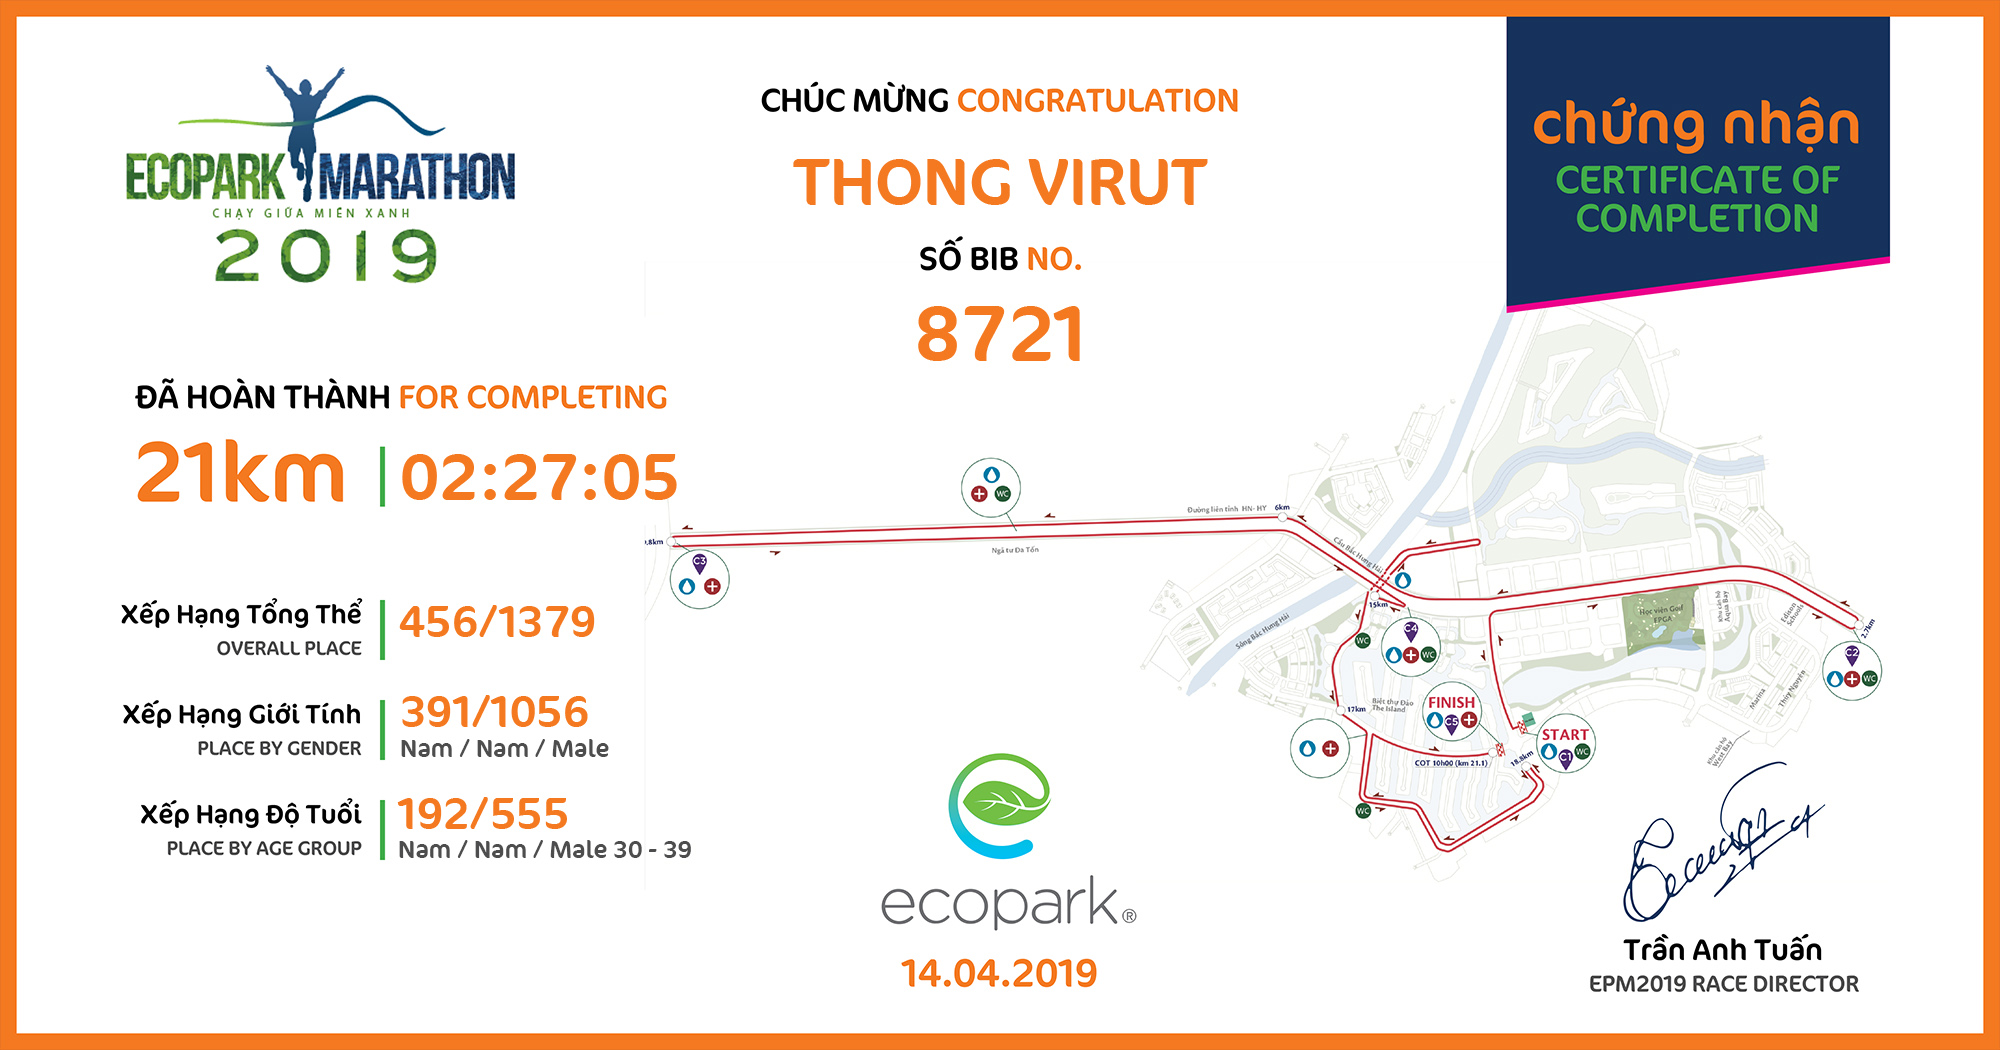 8721 - Thong Virut